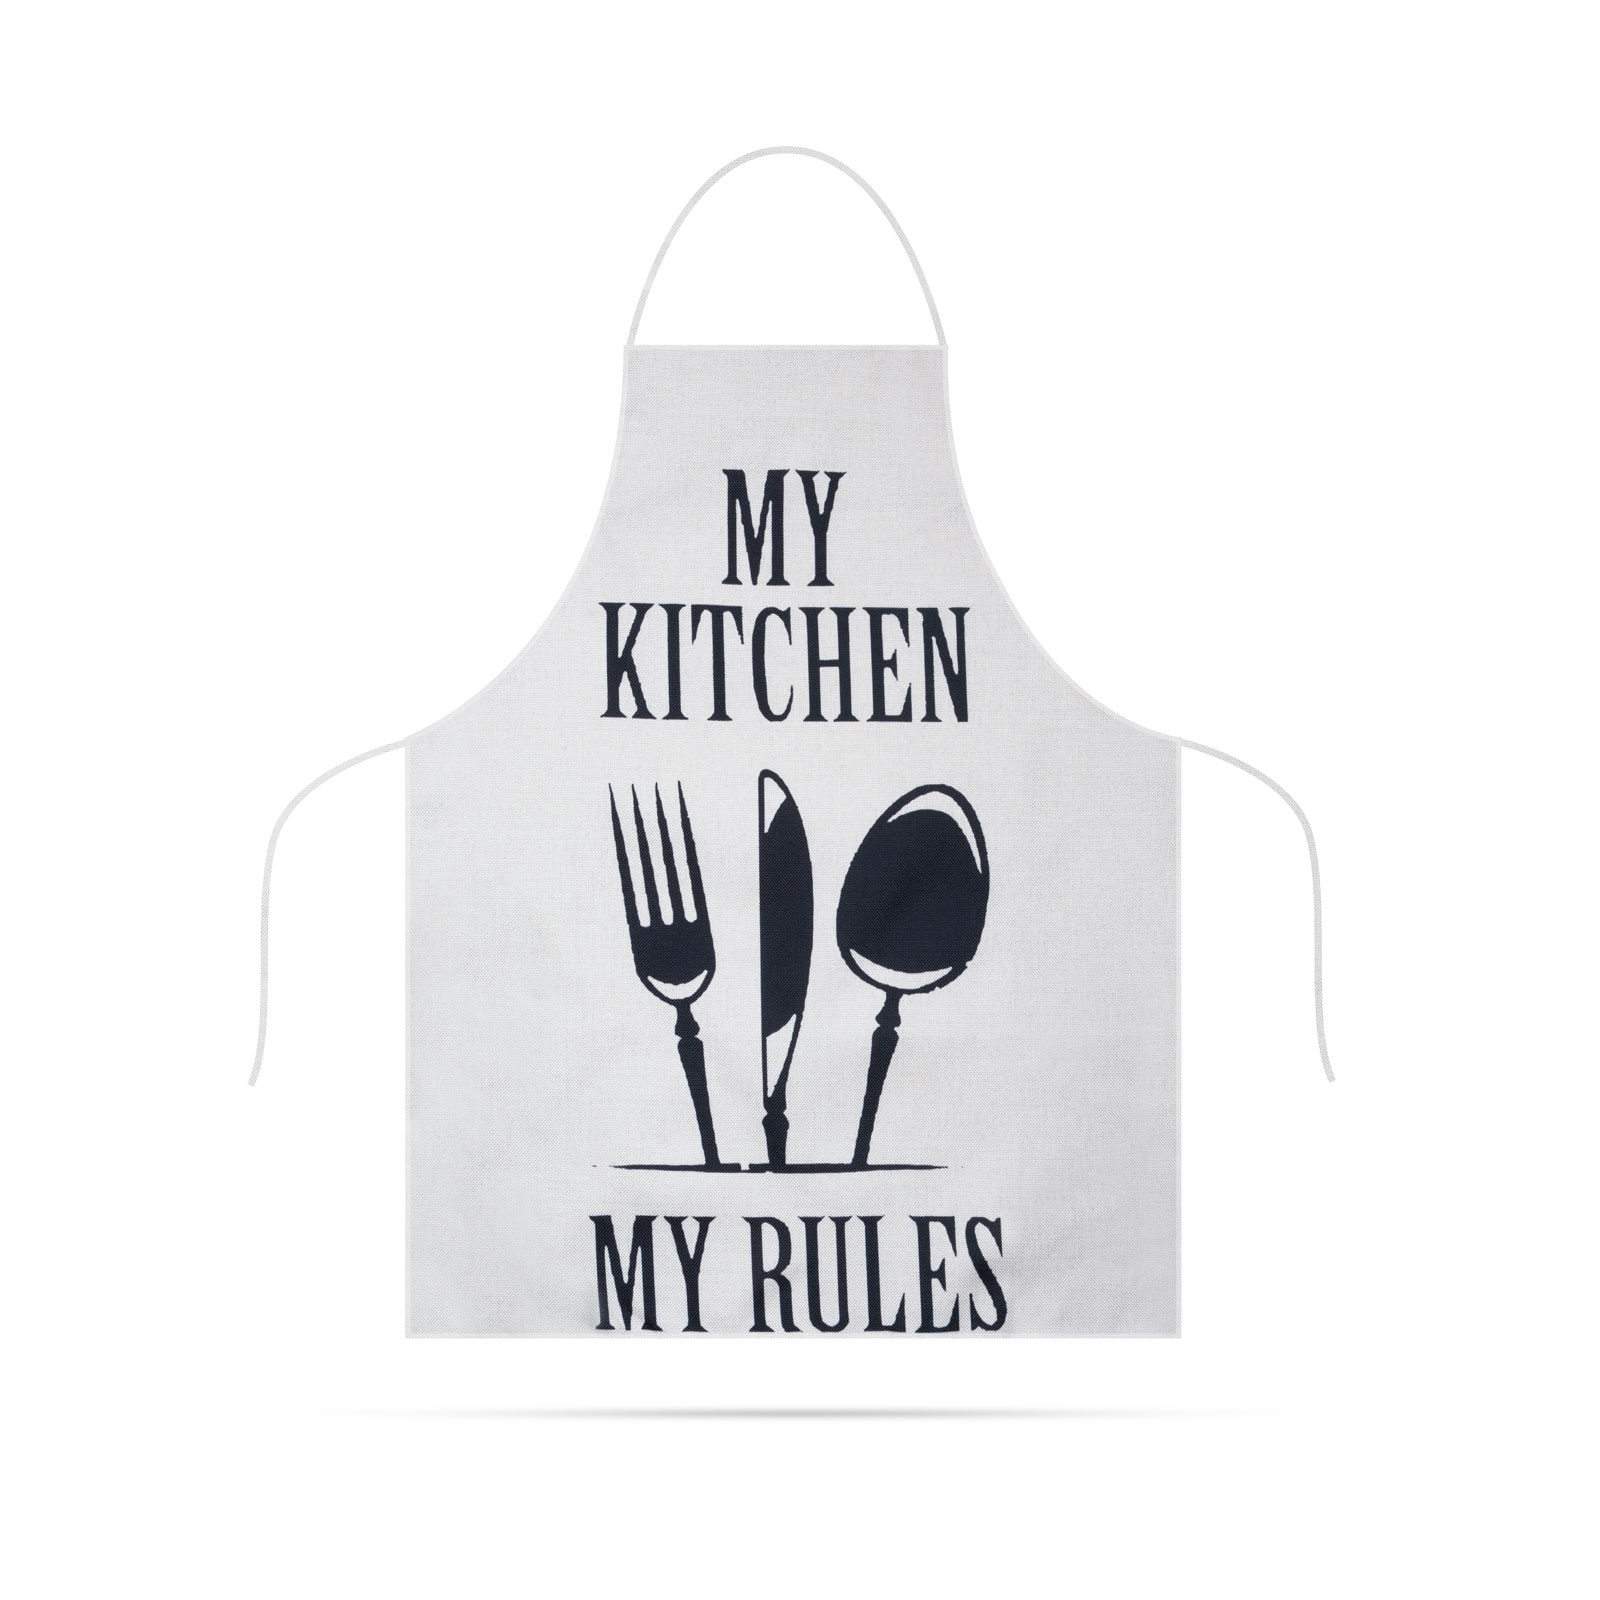 sort de bucatarie - 68 x 52 cm - My kitchen, My rules! (alb)